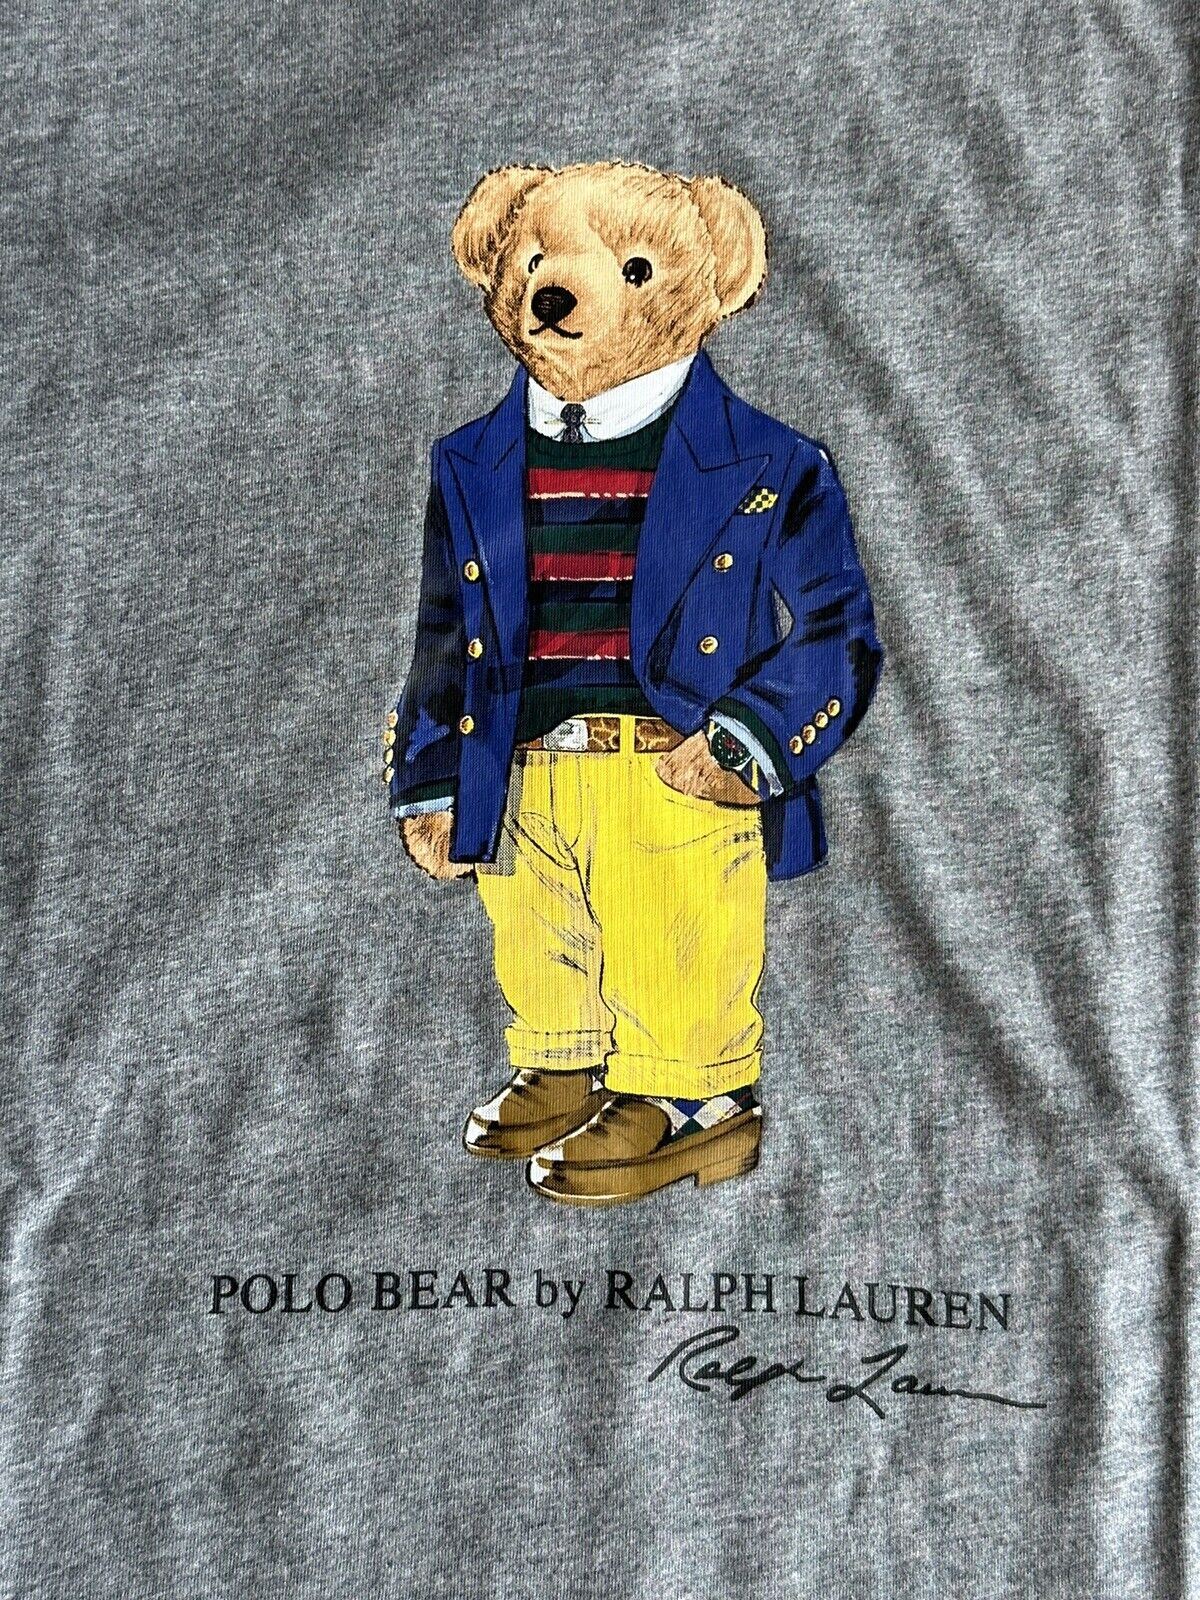 Neu mit Etikett: Polo Ralph Lauren Bear Baumwoll-T-Shirt, Grau, XL/TG